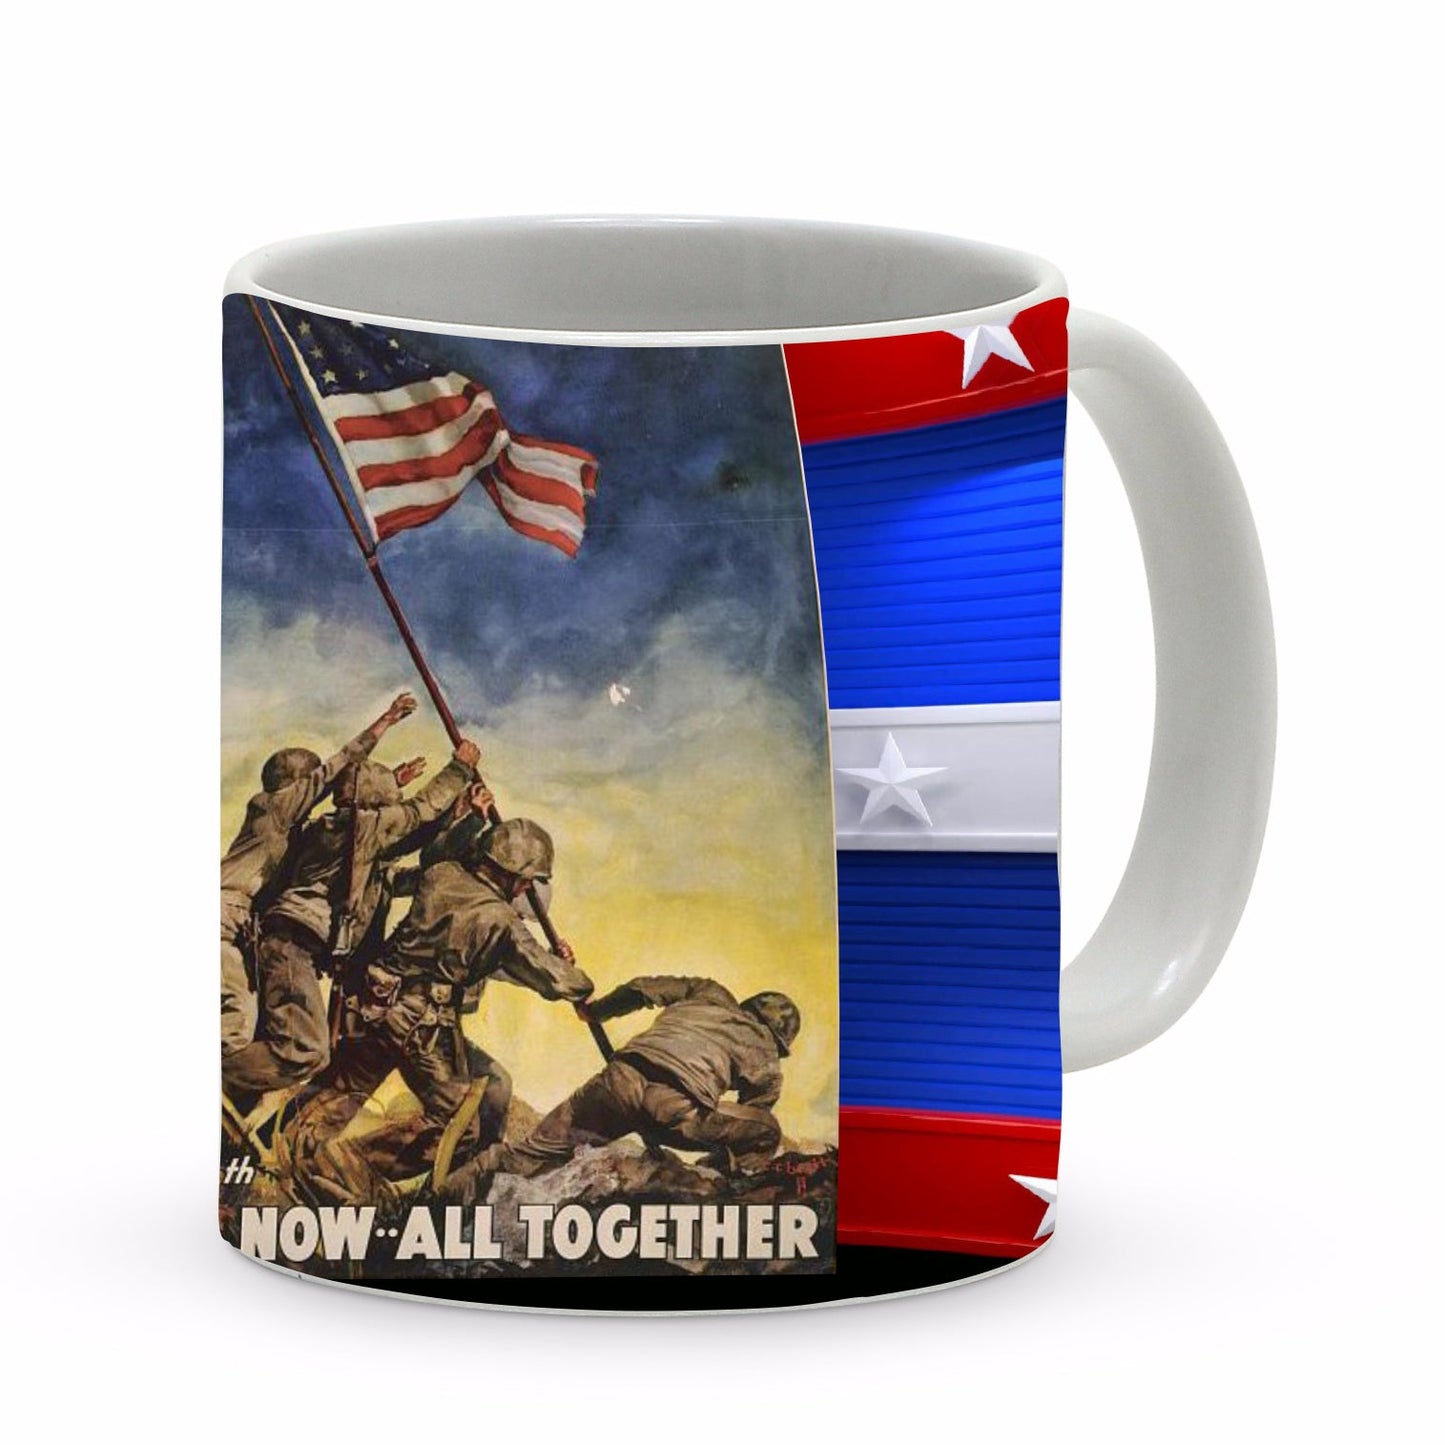 SUBLIMART: Patriotic Mug 'Now all together' color (Design 11)